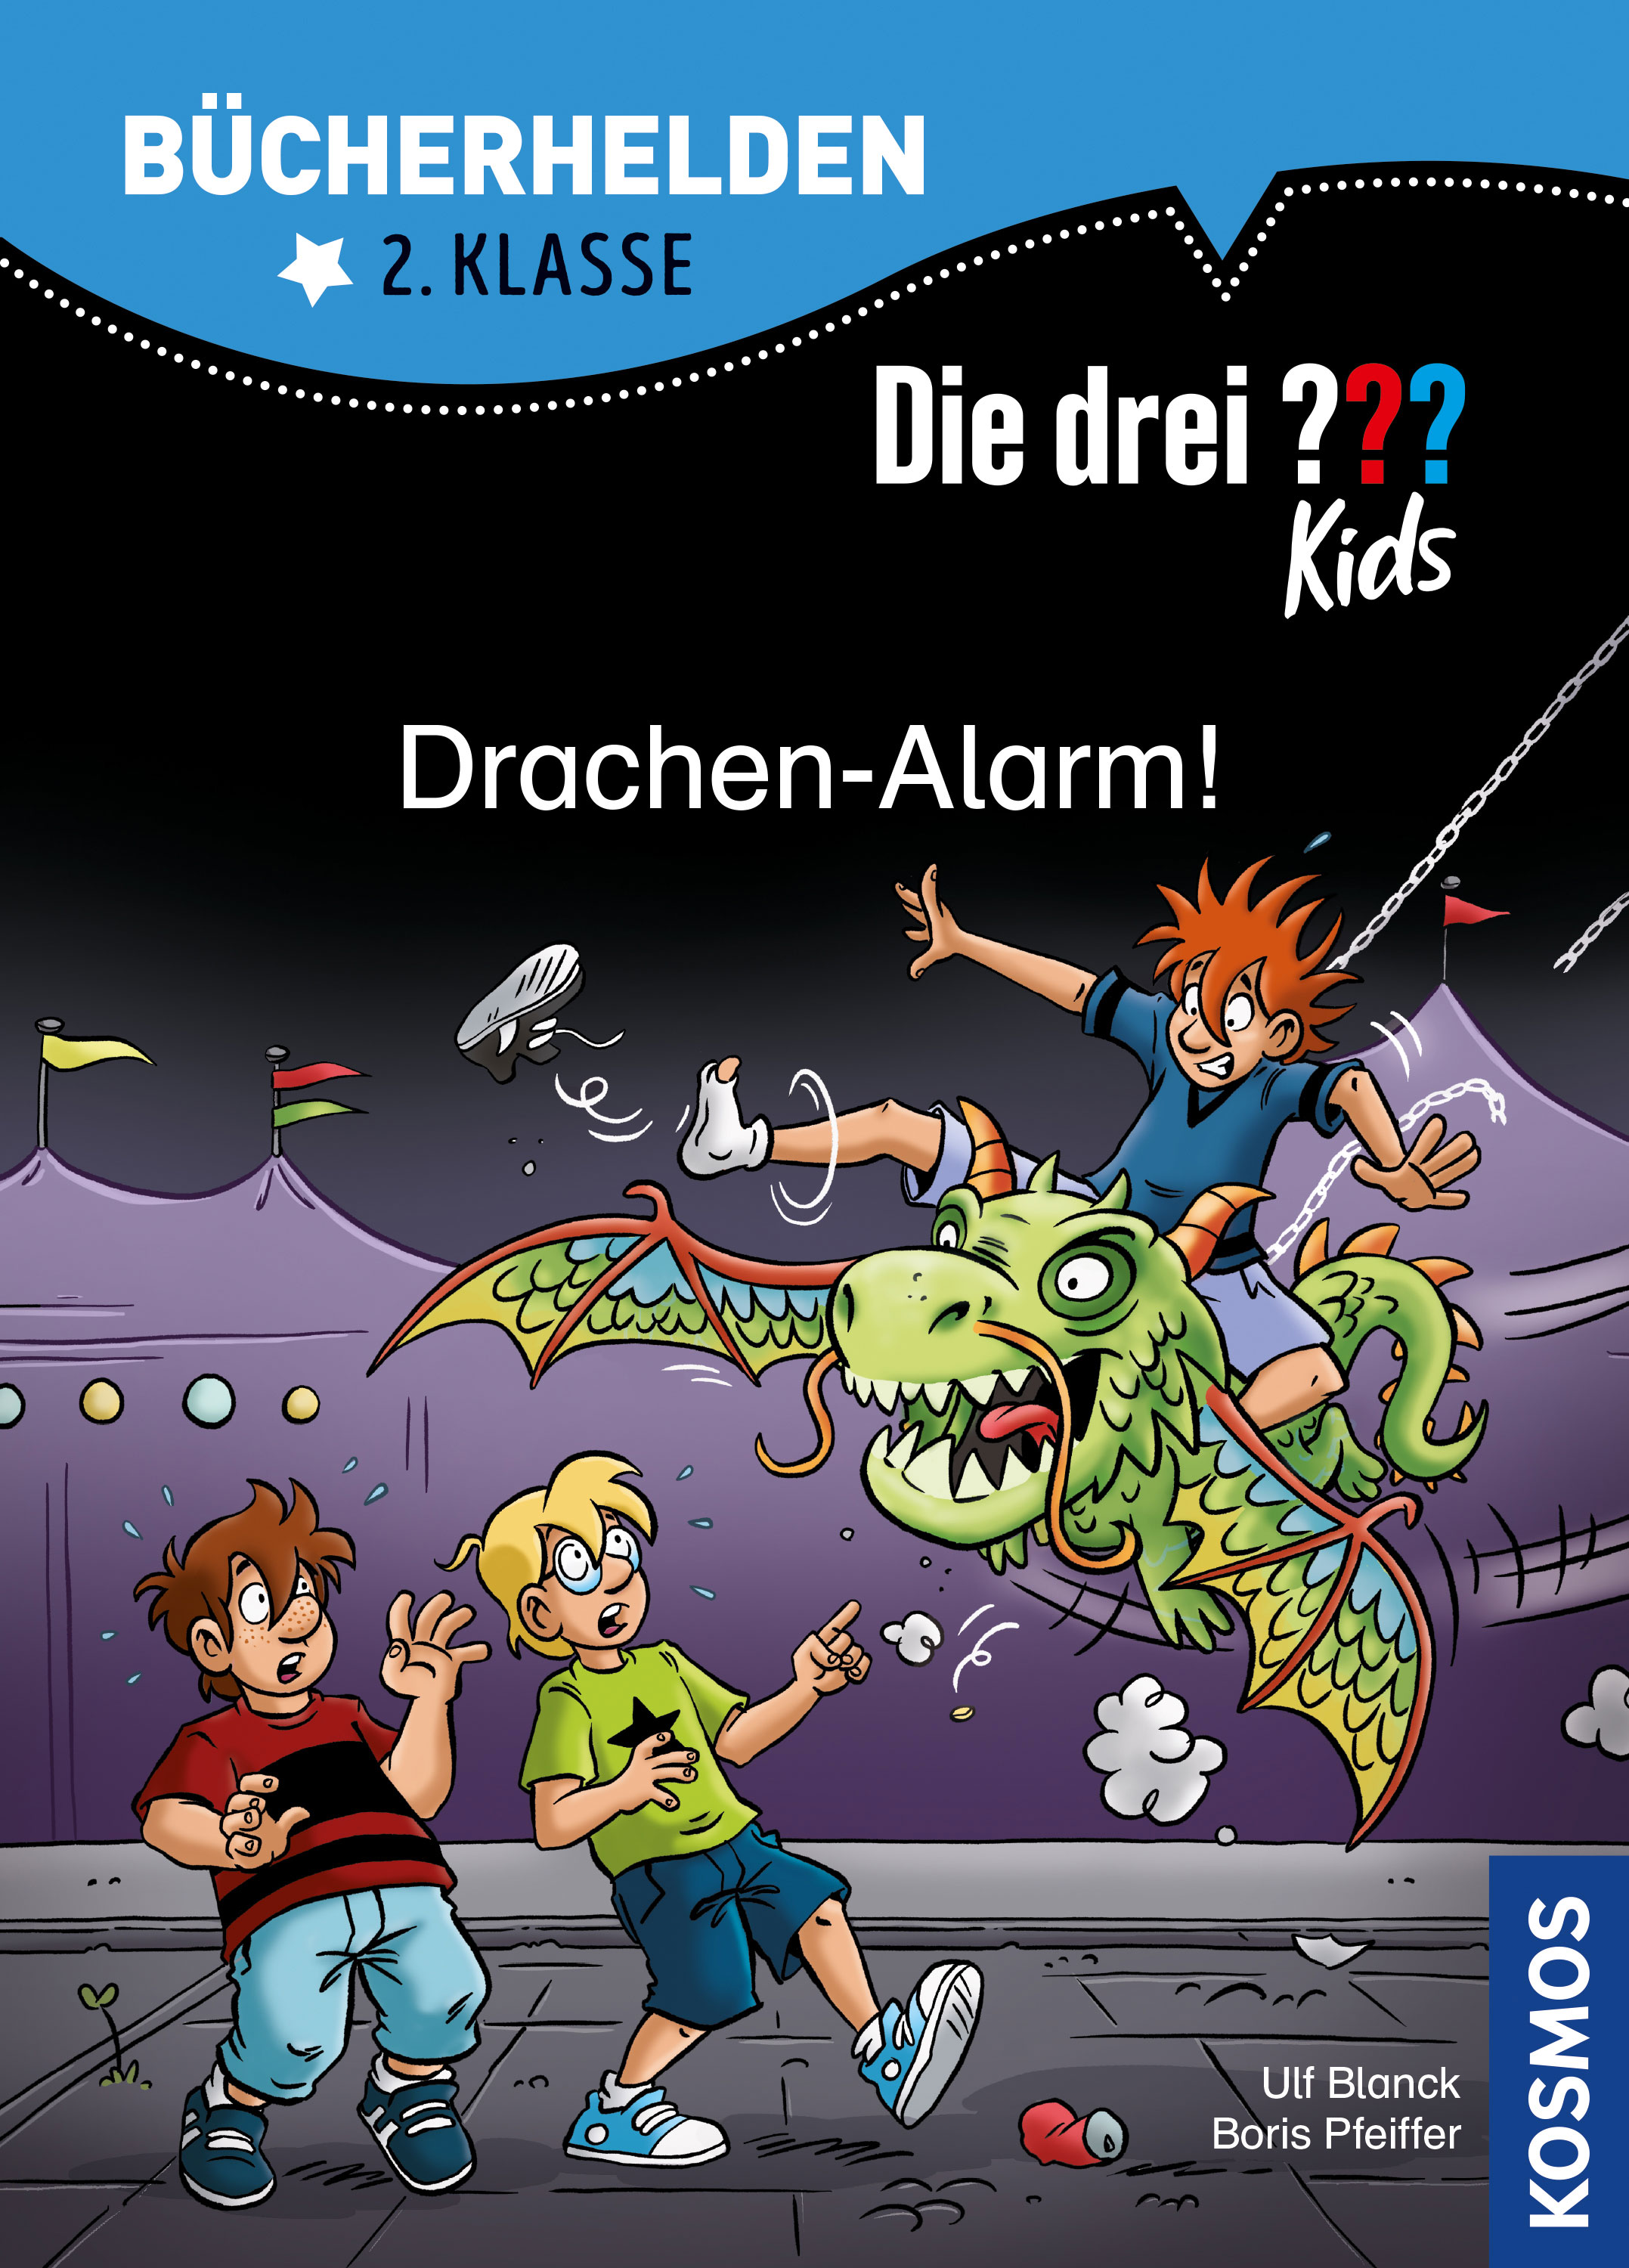 Die Drei ??? (Fragezeichen) Kids, Buch-Special: Drachen-Alarm! (Bücherhelden 2. Klasse) 